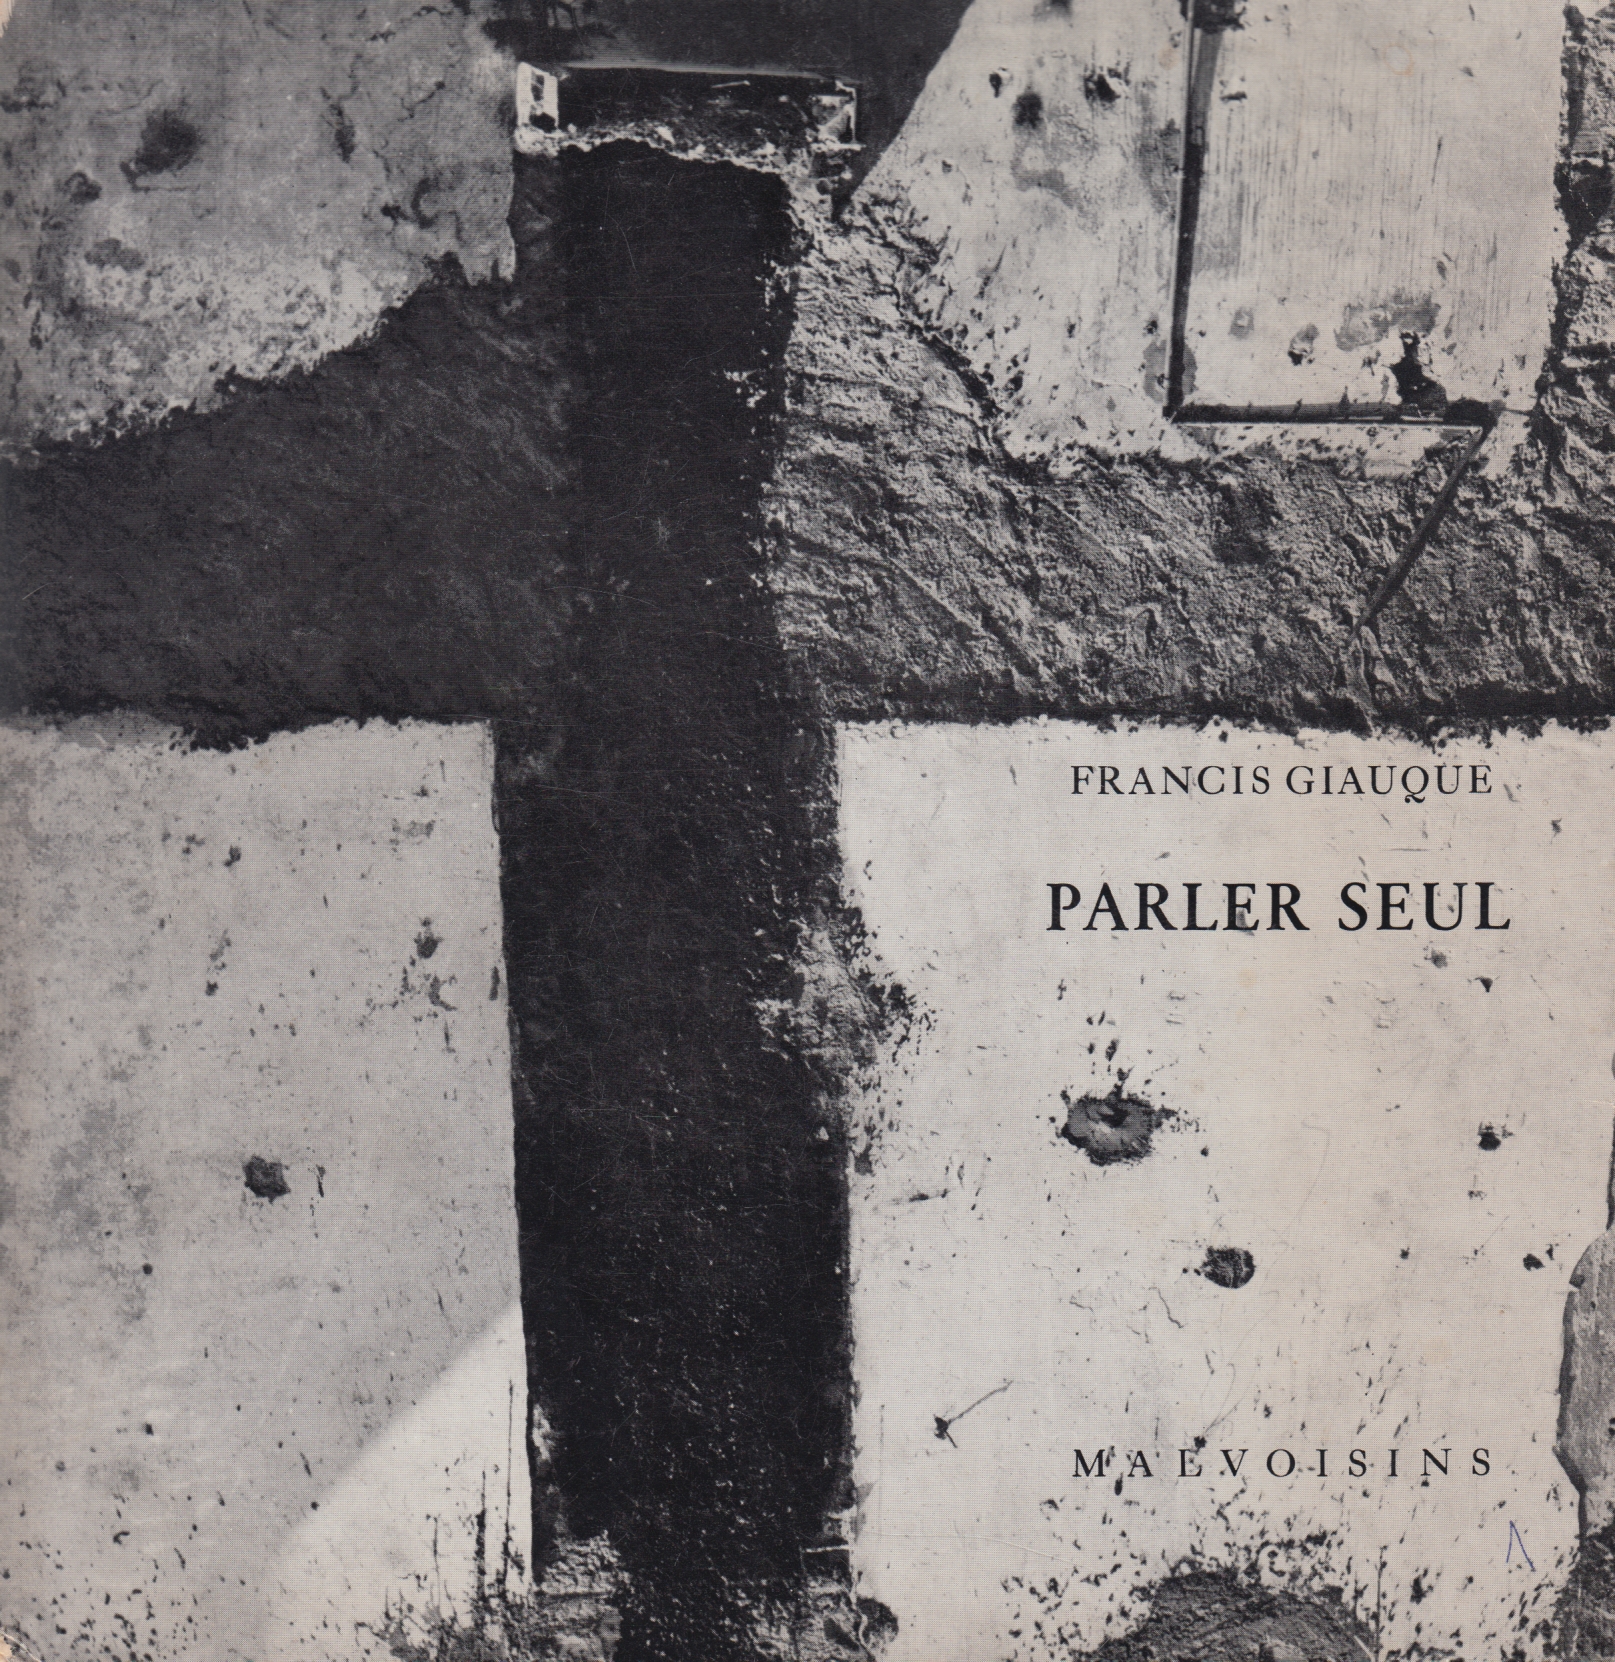 Couverture de Tristan Solier pour la belle édition de Parler seul, suivi de L’Ombre et la nuit, parue à Porrentruy aux Éditions des Malvoisins en 1969.